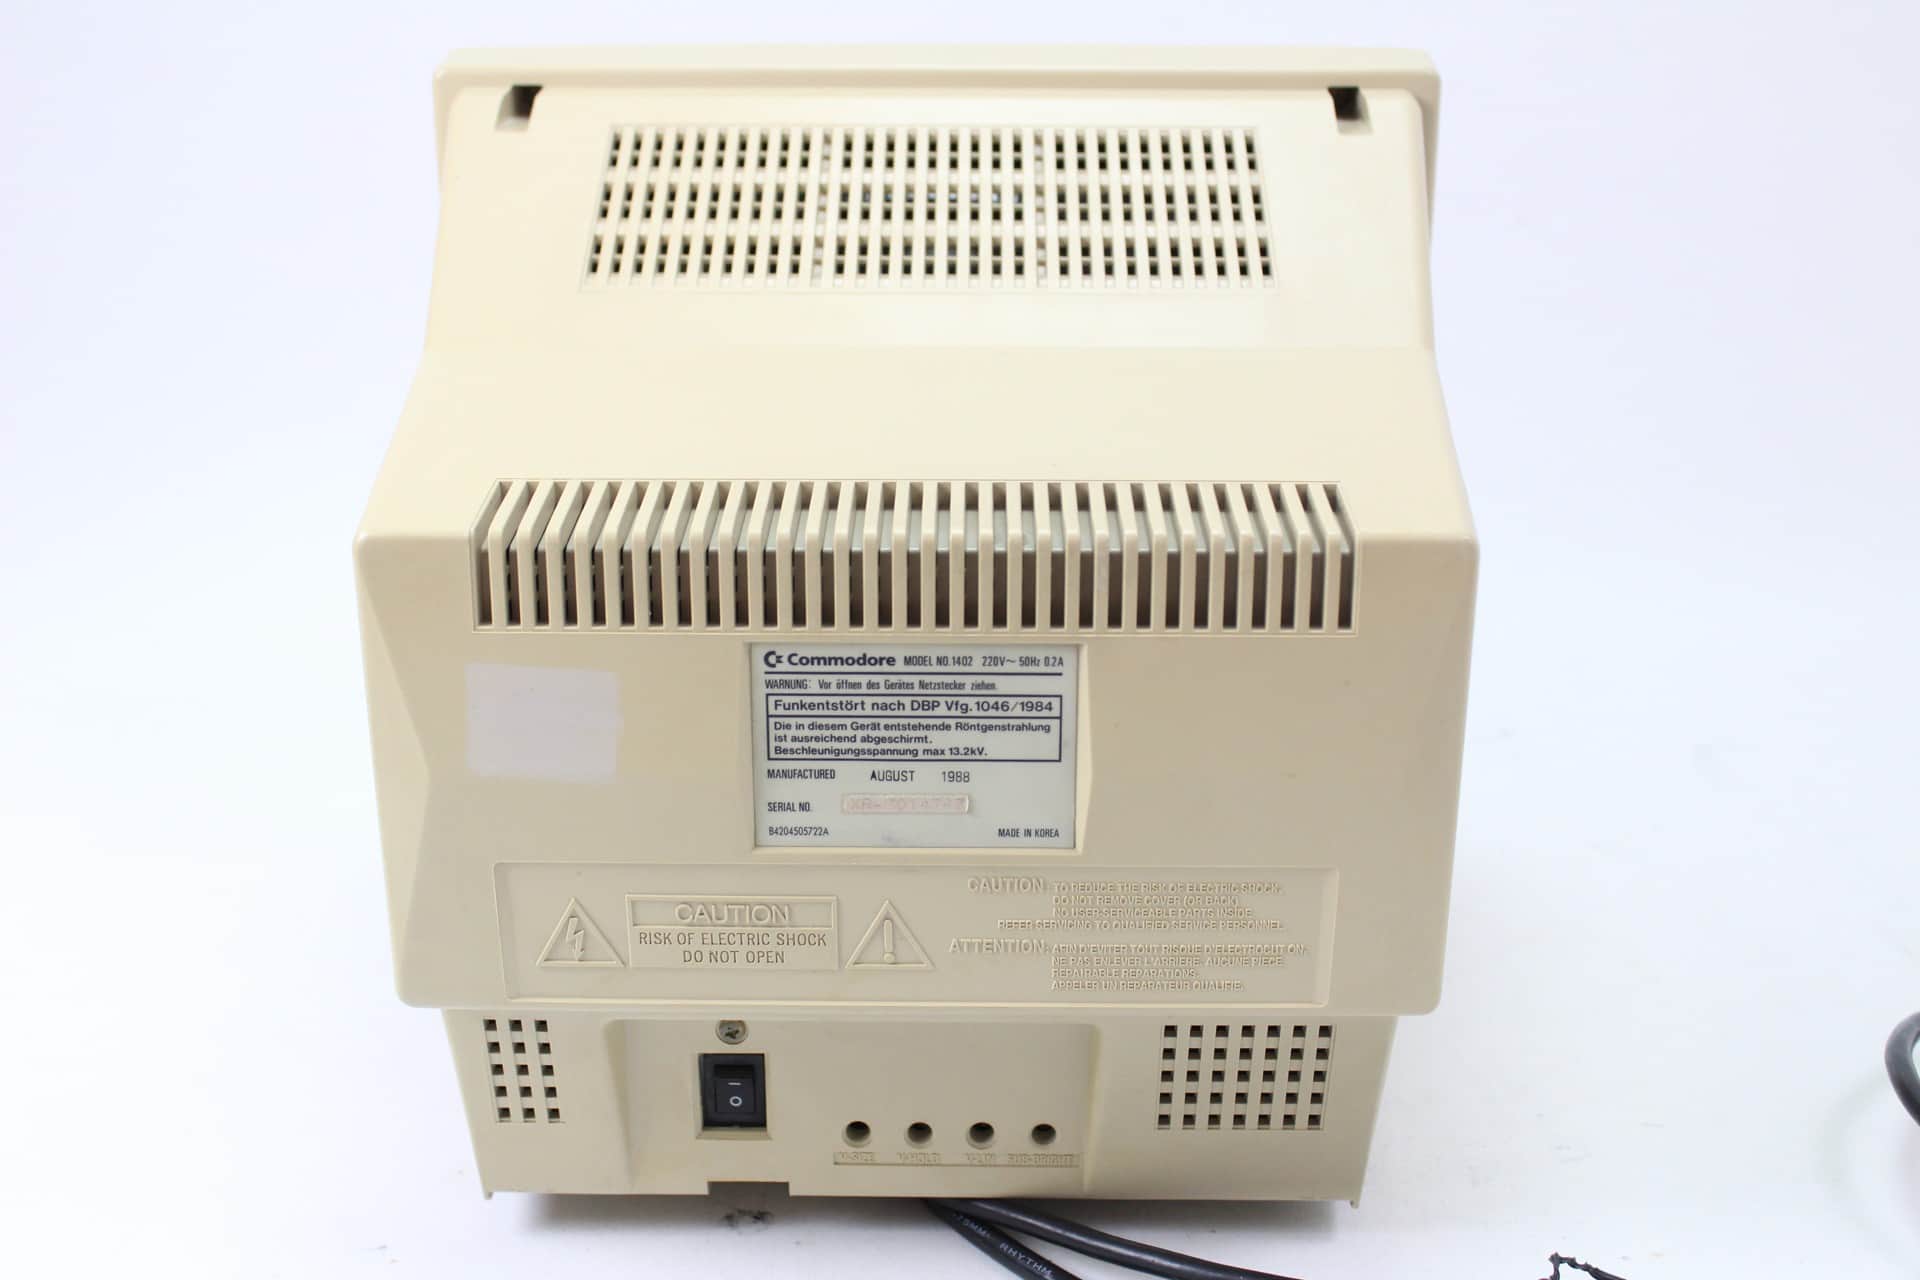 Commodore-monitor-1402